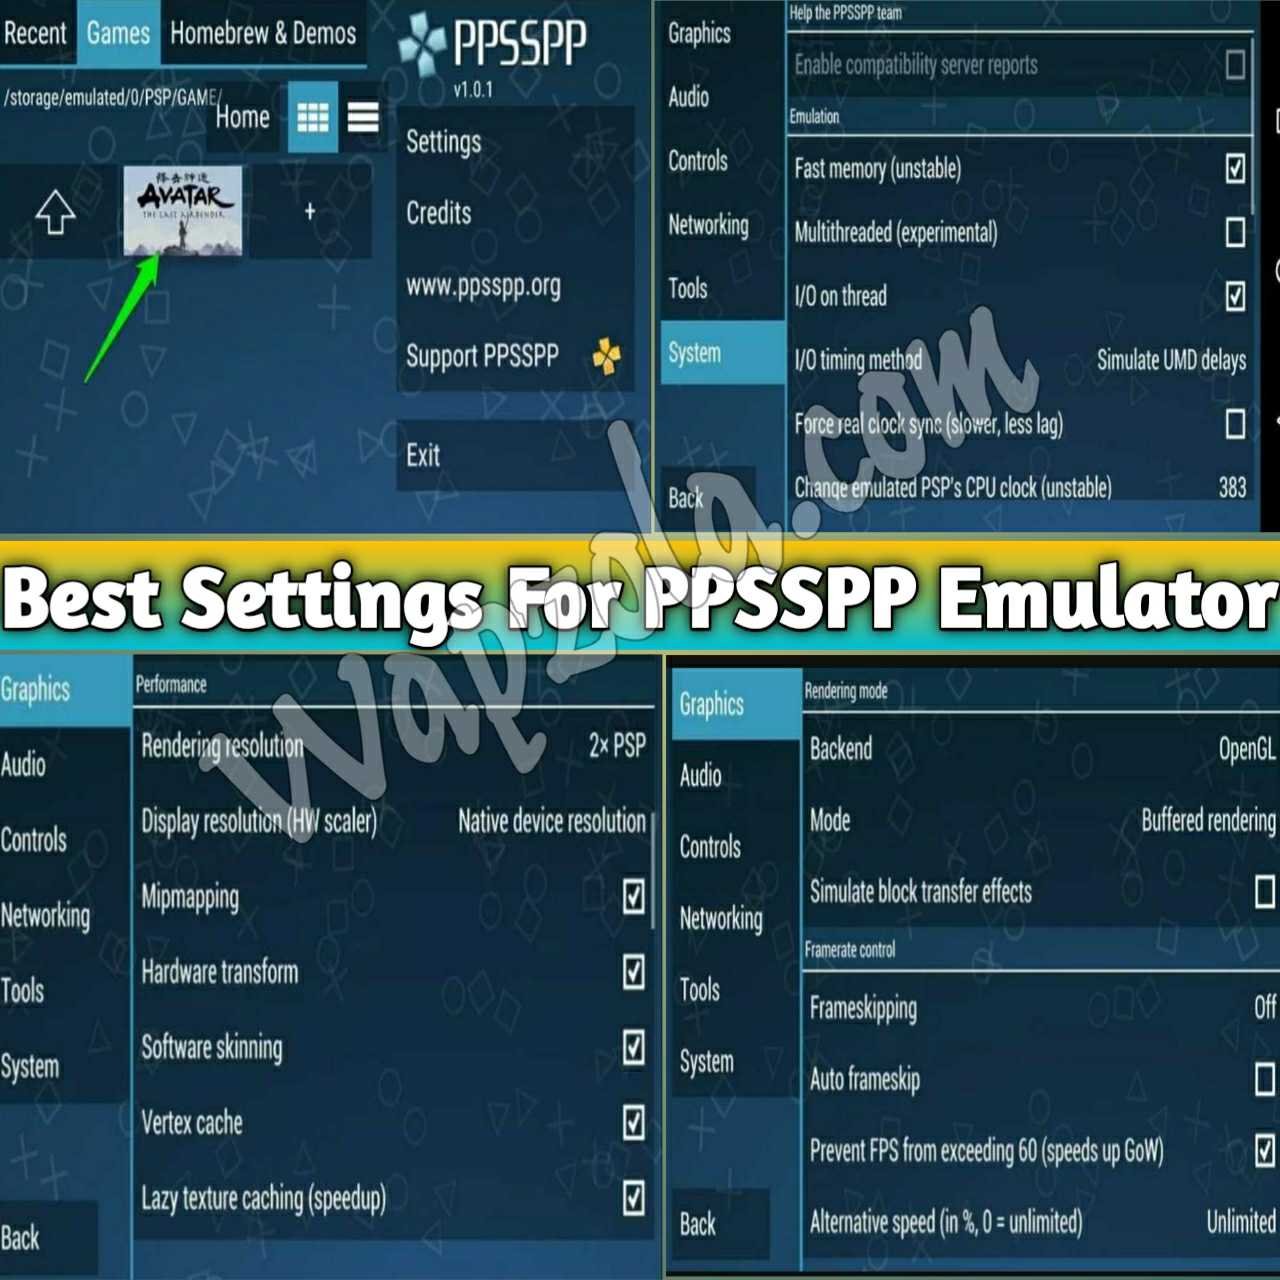 Los mejores ajustes para el emulador de PPSSPP/PSP en los teléfonos inteligentes Android y en el PC (100% Lag arreglar y resolver los problemas de sonido)